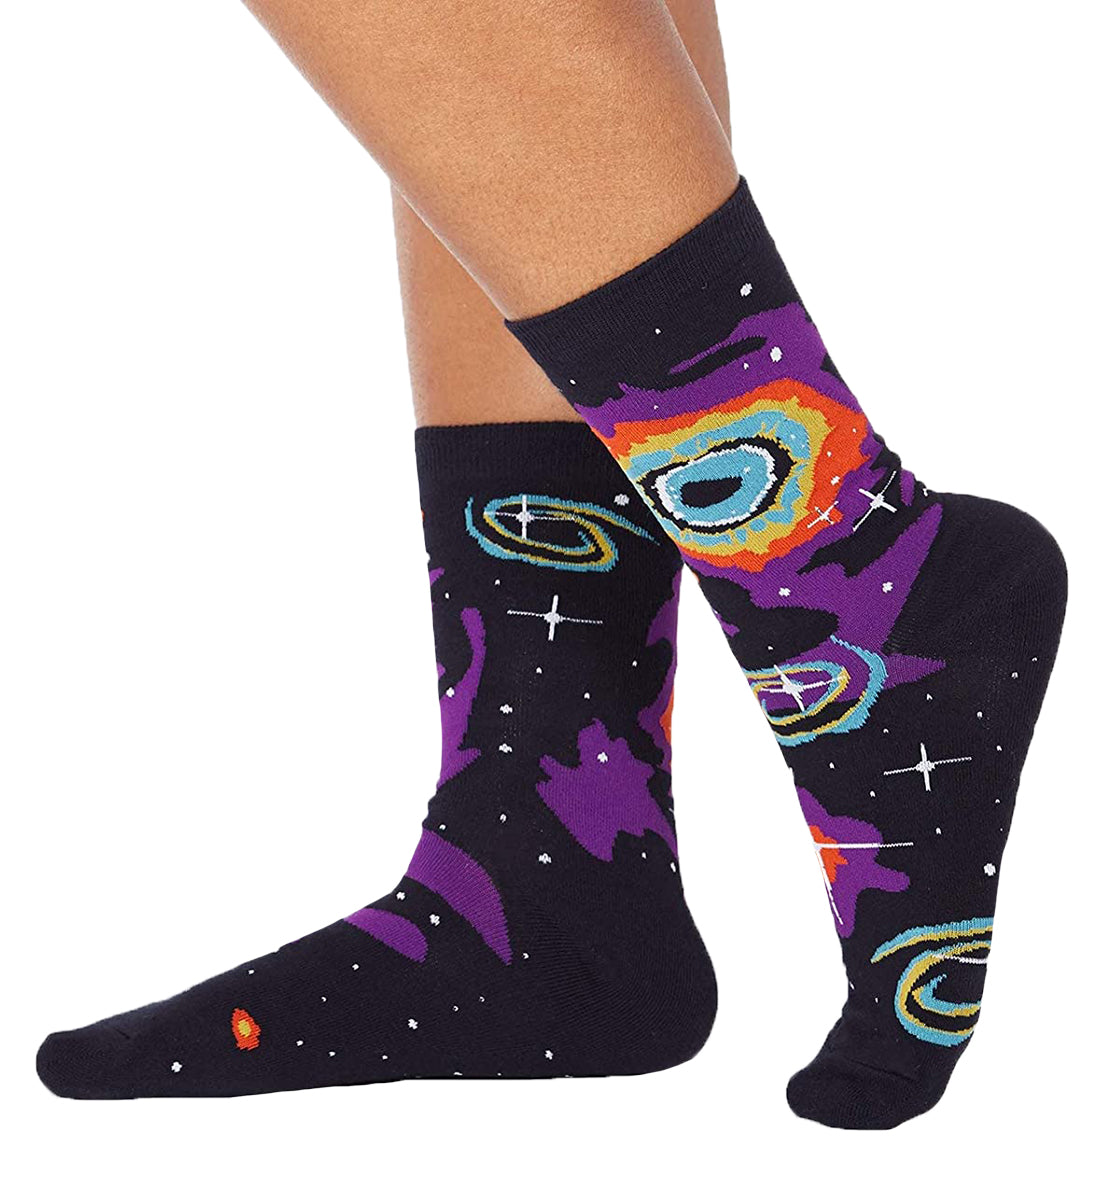 SOCK it to me Women's Crew Socks (w0212),Helix Nebula - Helix Nebula,One Size